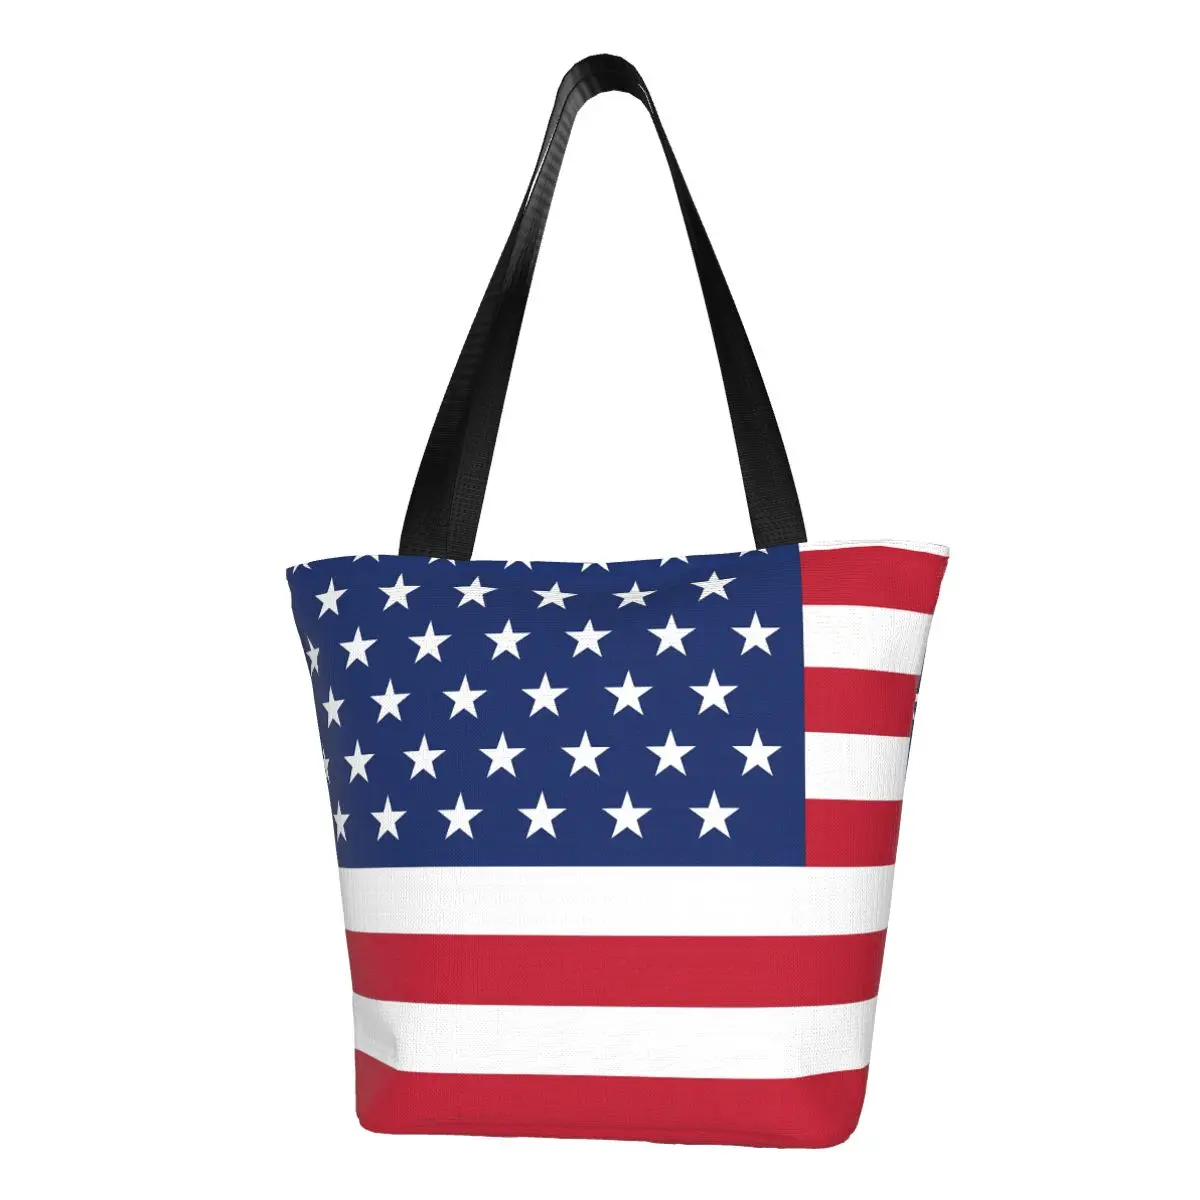 

Сумка-шоппер с флагом США, с рисунком звезд и полосок, женская сумка через плечо Y2k, сумка-тоут из полиэстера, школьные женские сумки